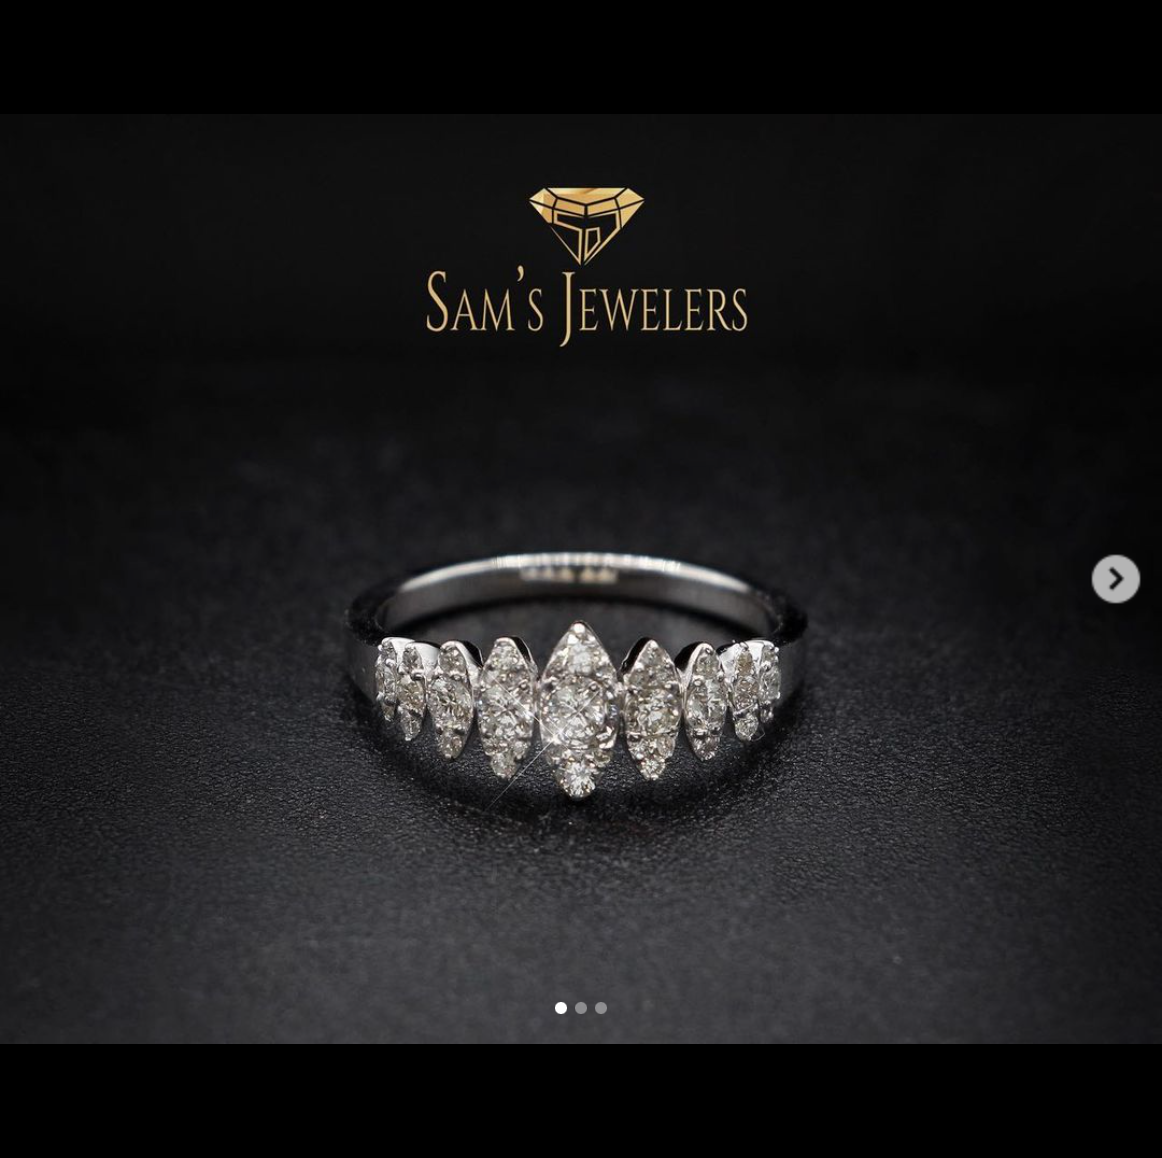 Sams Jewelers